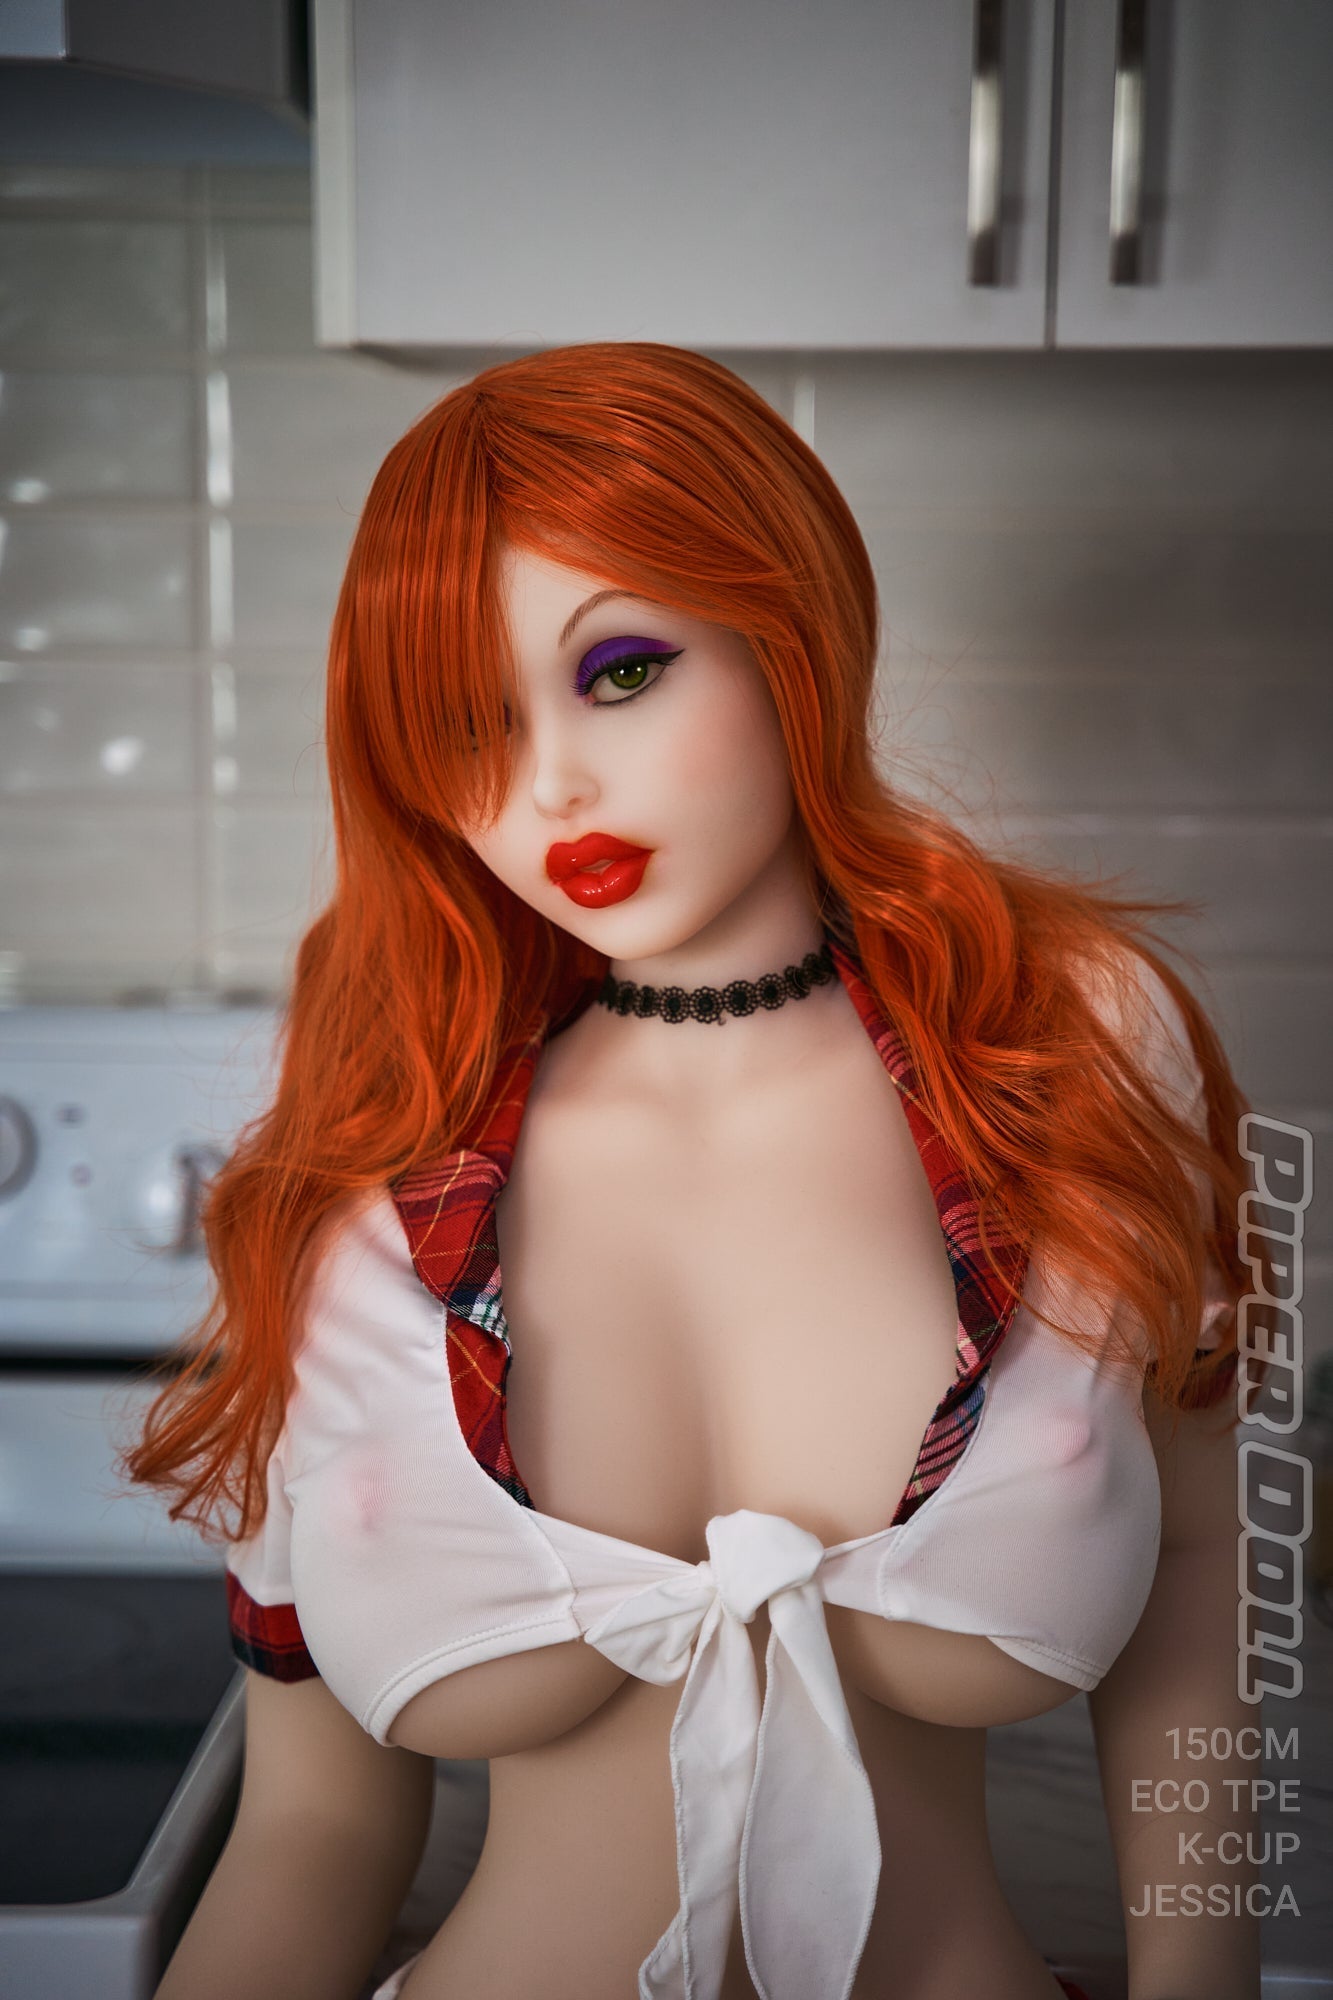 Piper Doll 150 cm K TPE - Jessica | FRISKY BUSINESS SG